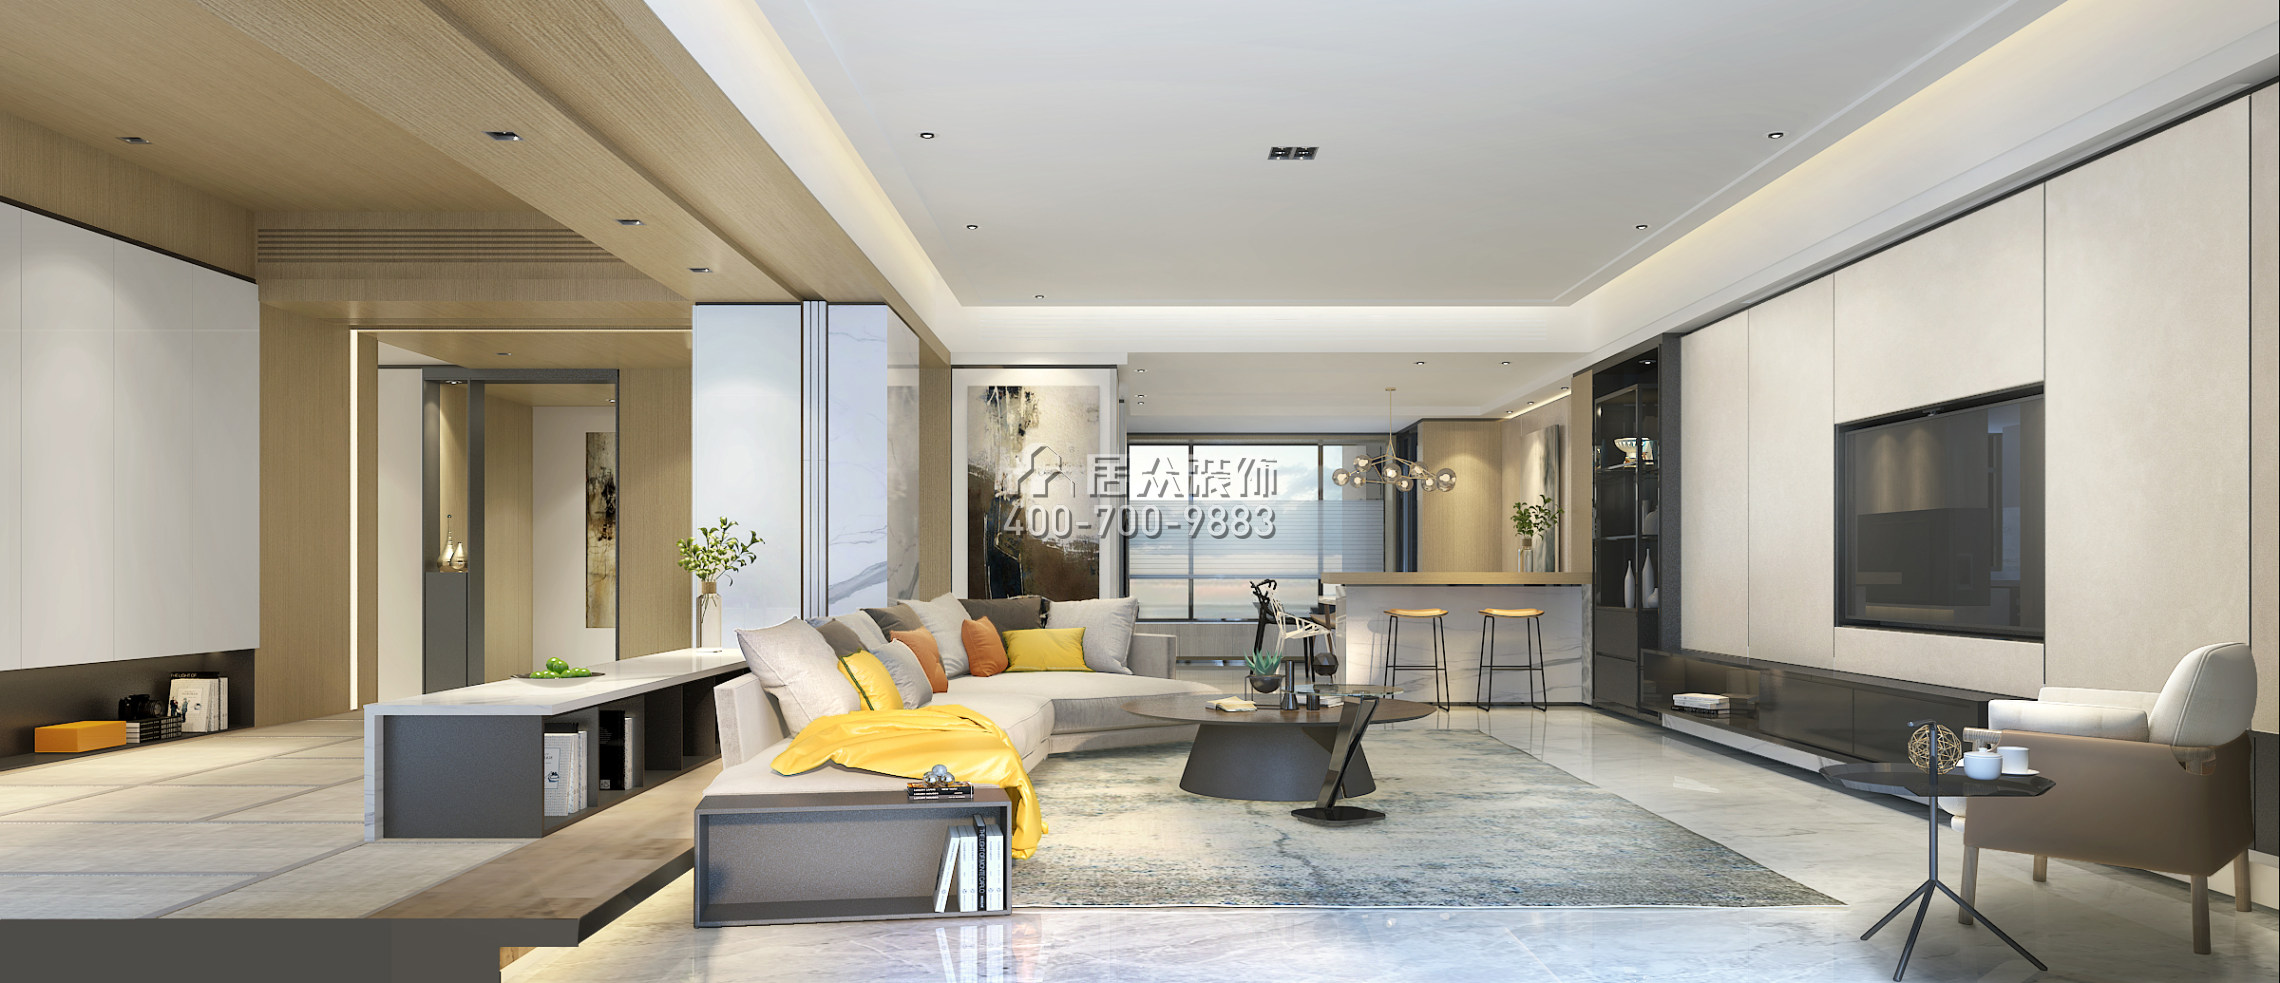 美的君兰江山300平方米现代简约风格平层户型客厅装修效果图